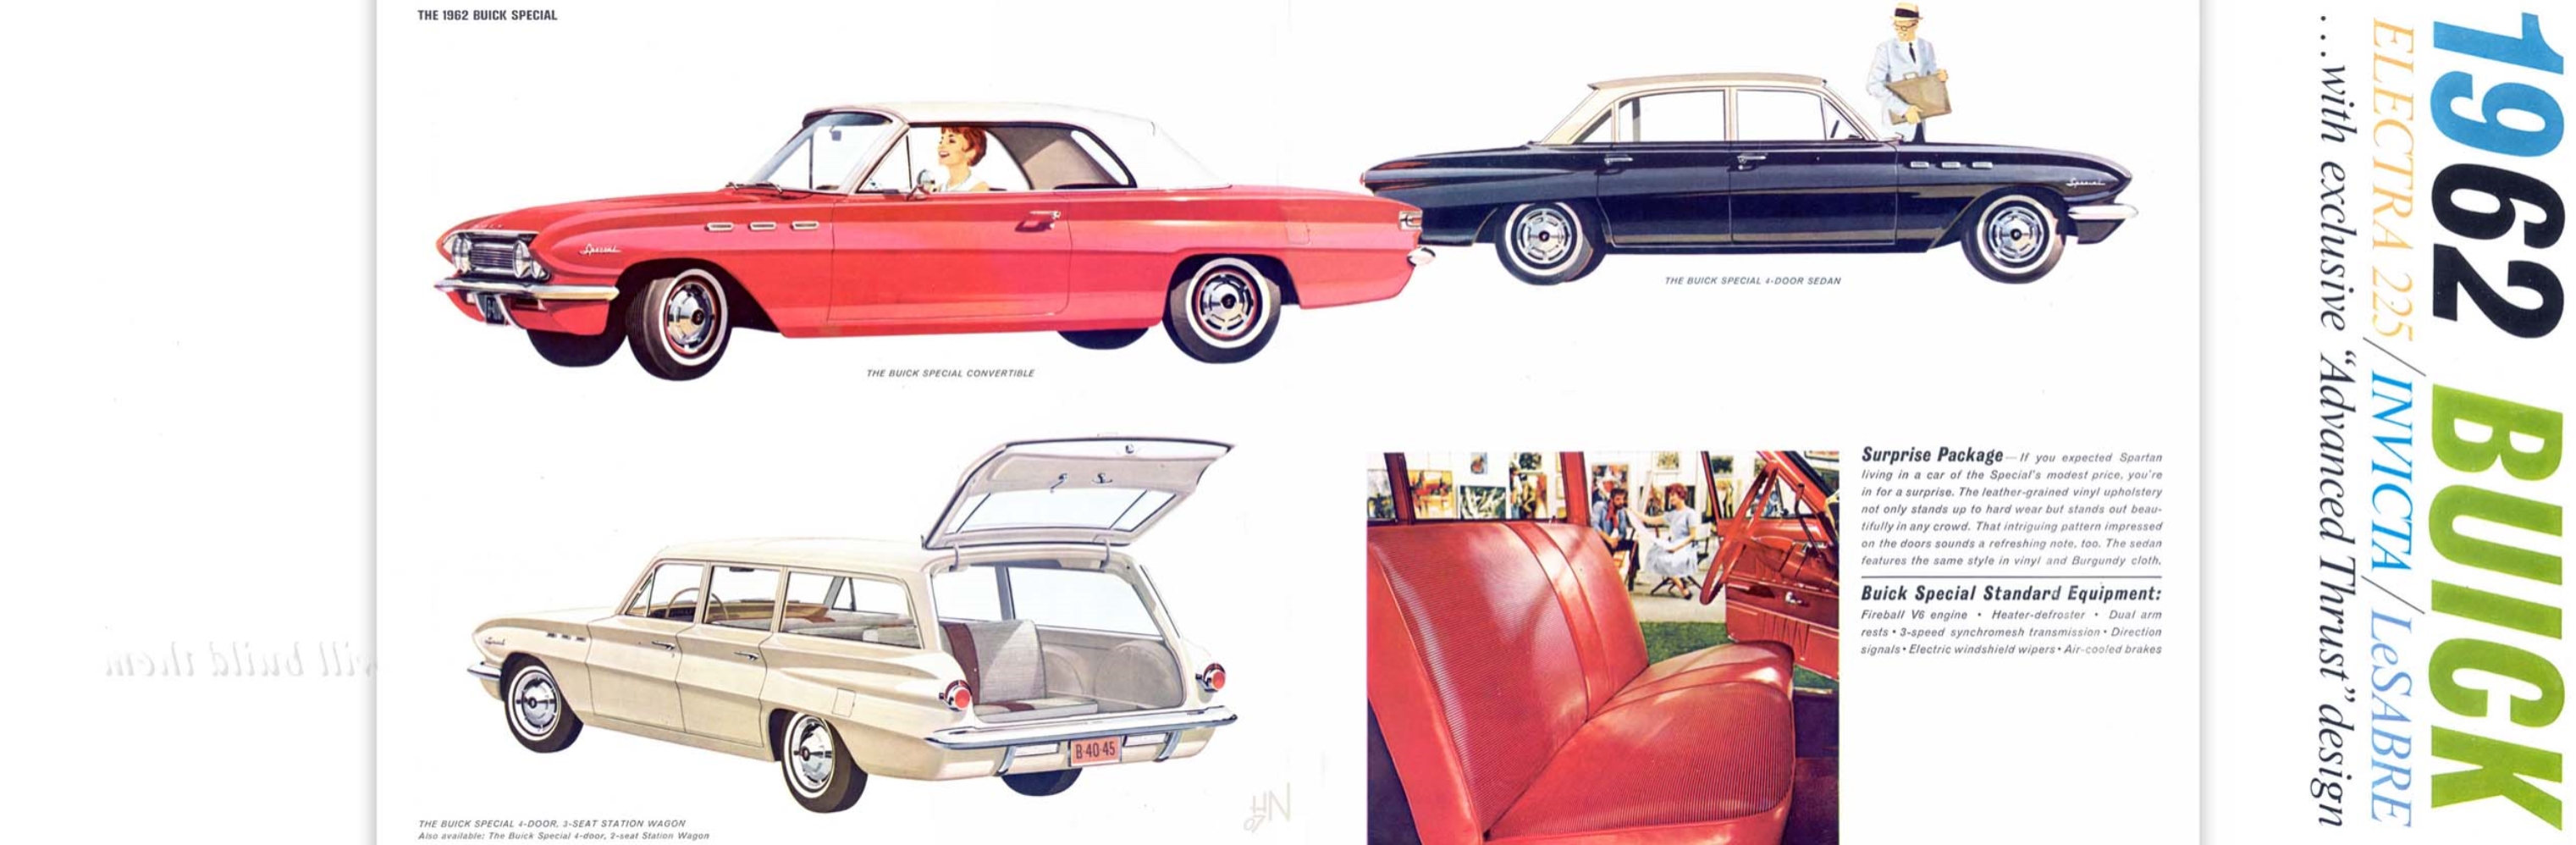 1962 Buick Full Line Prestige-06-07